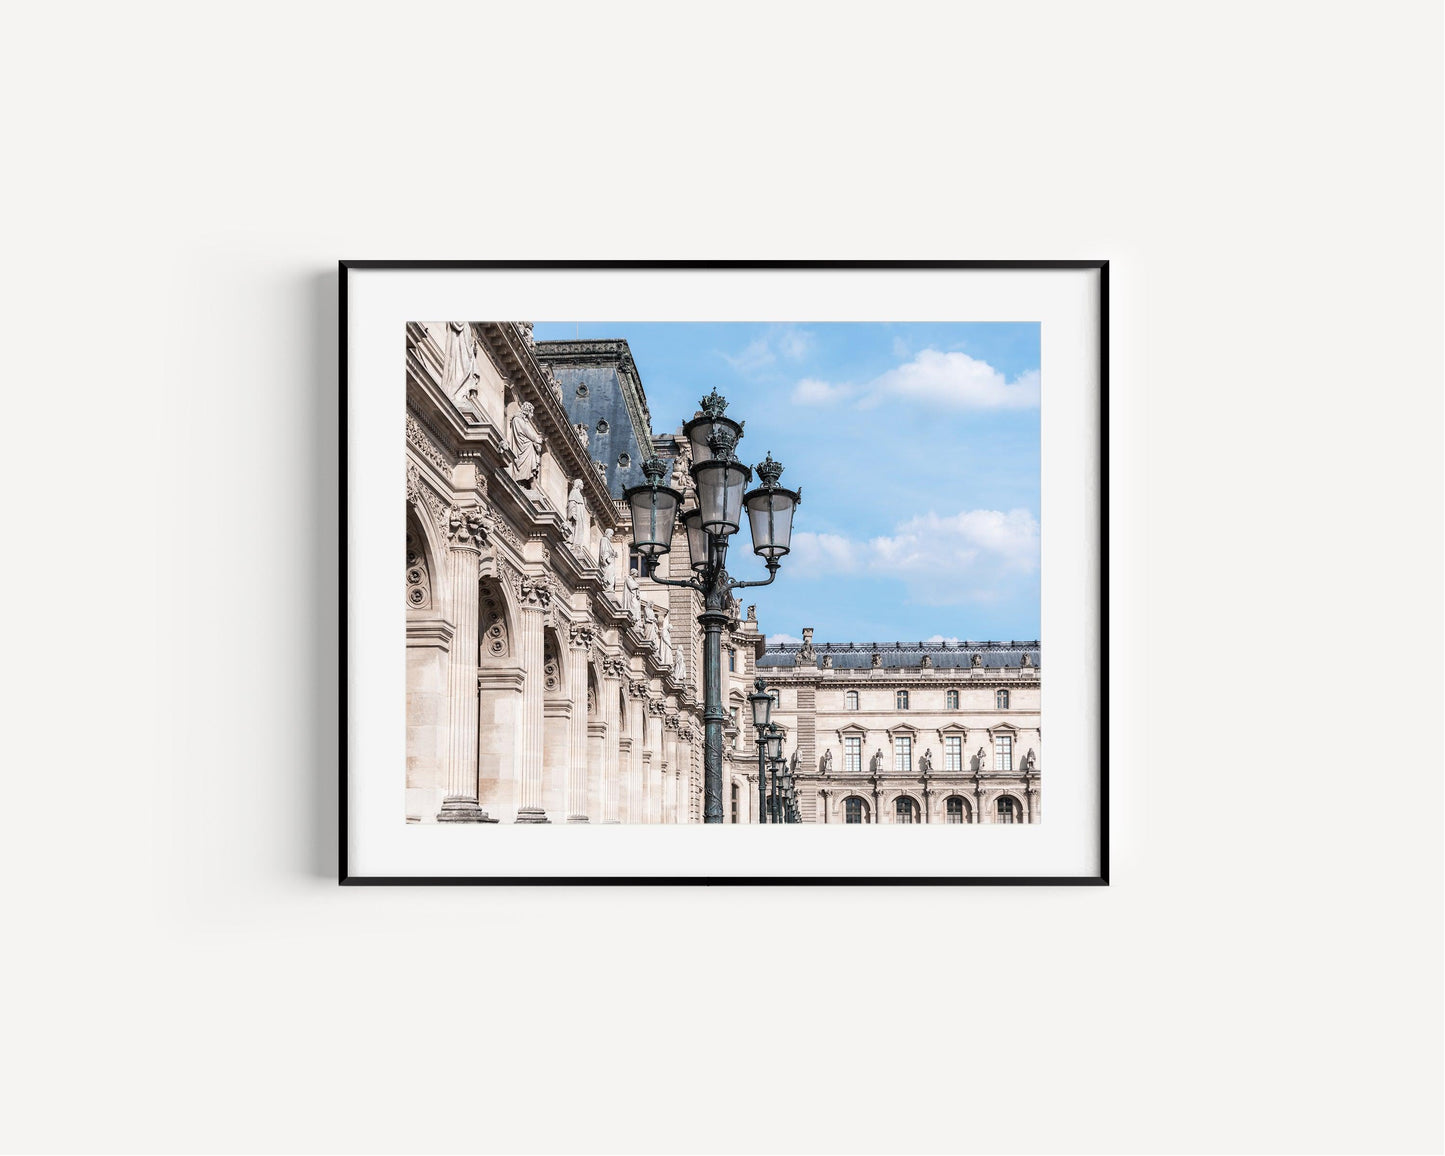 Louvre Museum Lamp Posts | Paris Photography Print - Departures Print Shop